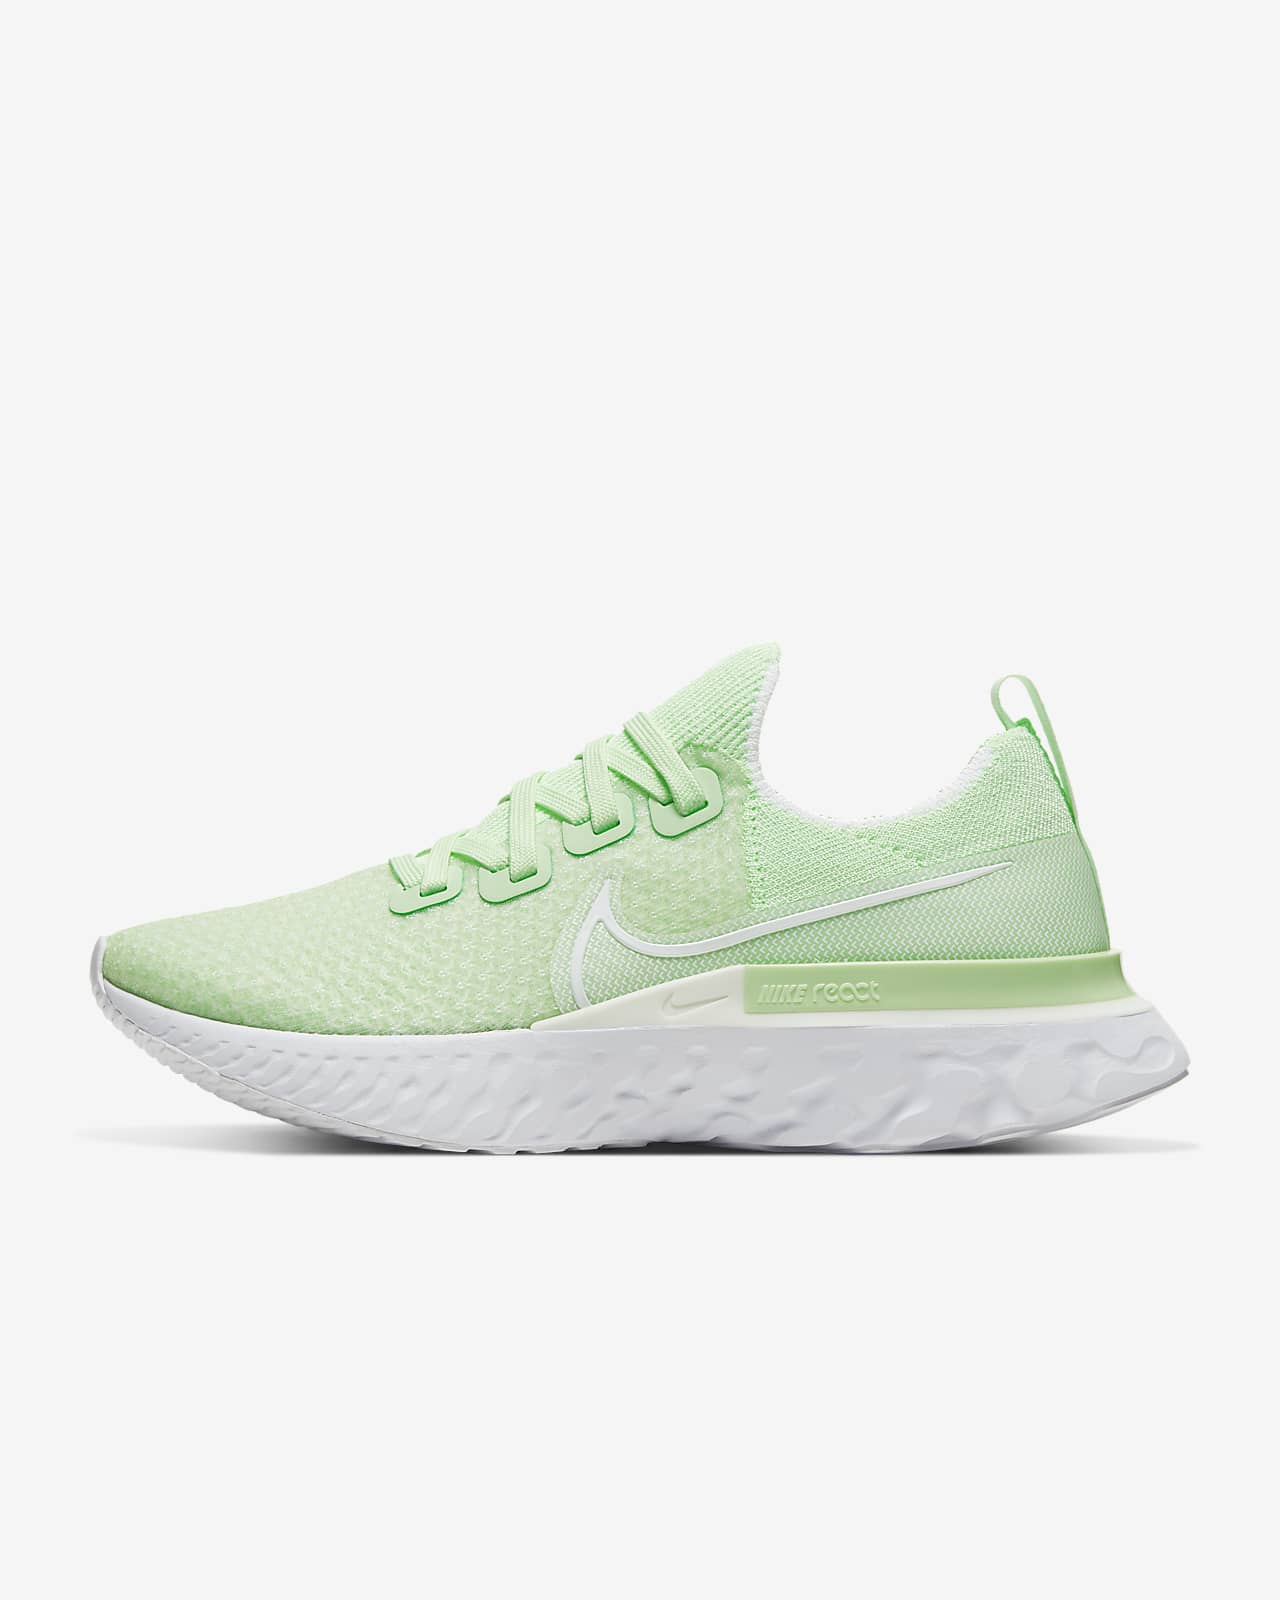 neon green nike womens running shoes